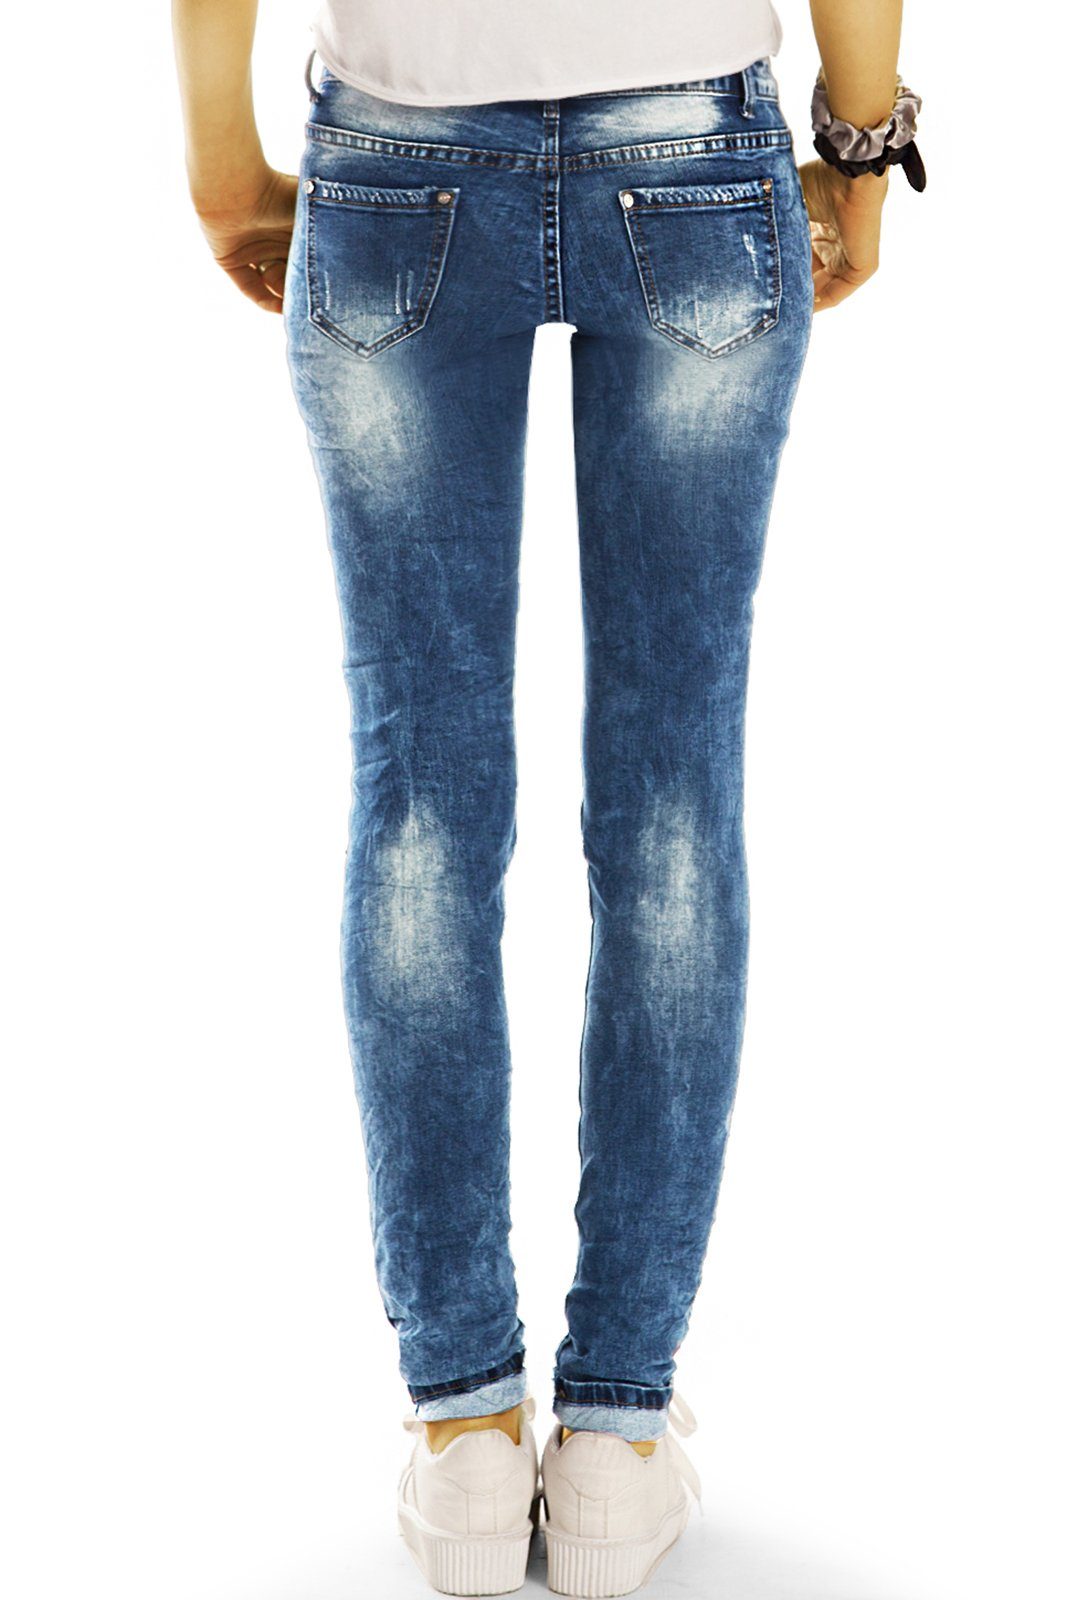 Details mit j31p Damen 5-Pocket-Style Rise, auffällige Hose Low-rise-Jeans styled Stretch-Anteil, - - Design be Hüftjeans Low